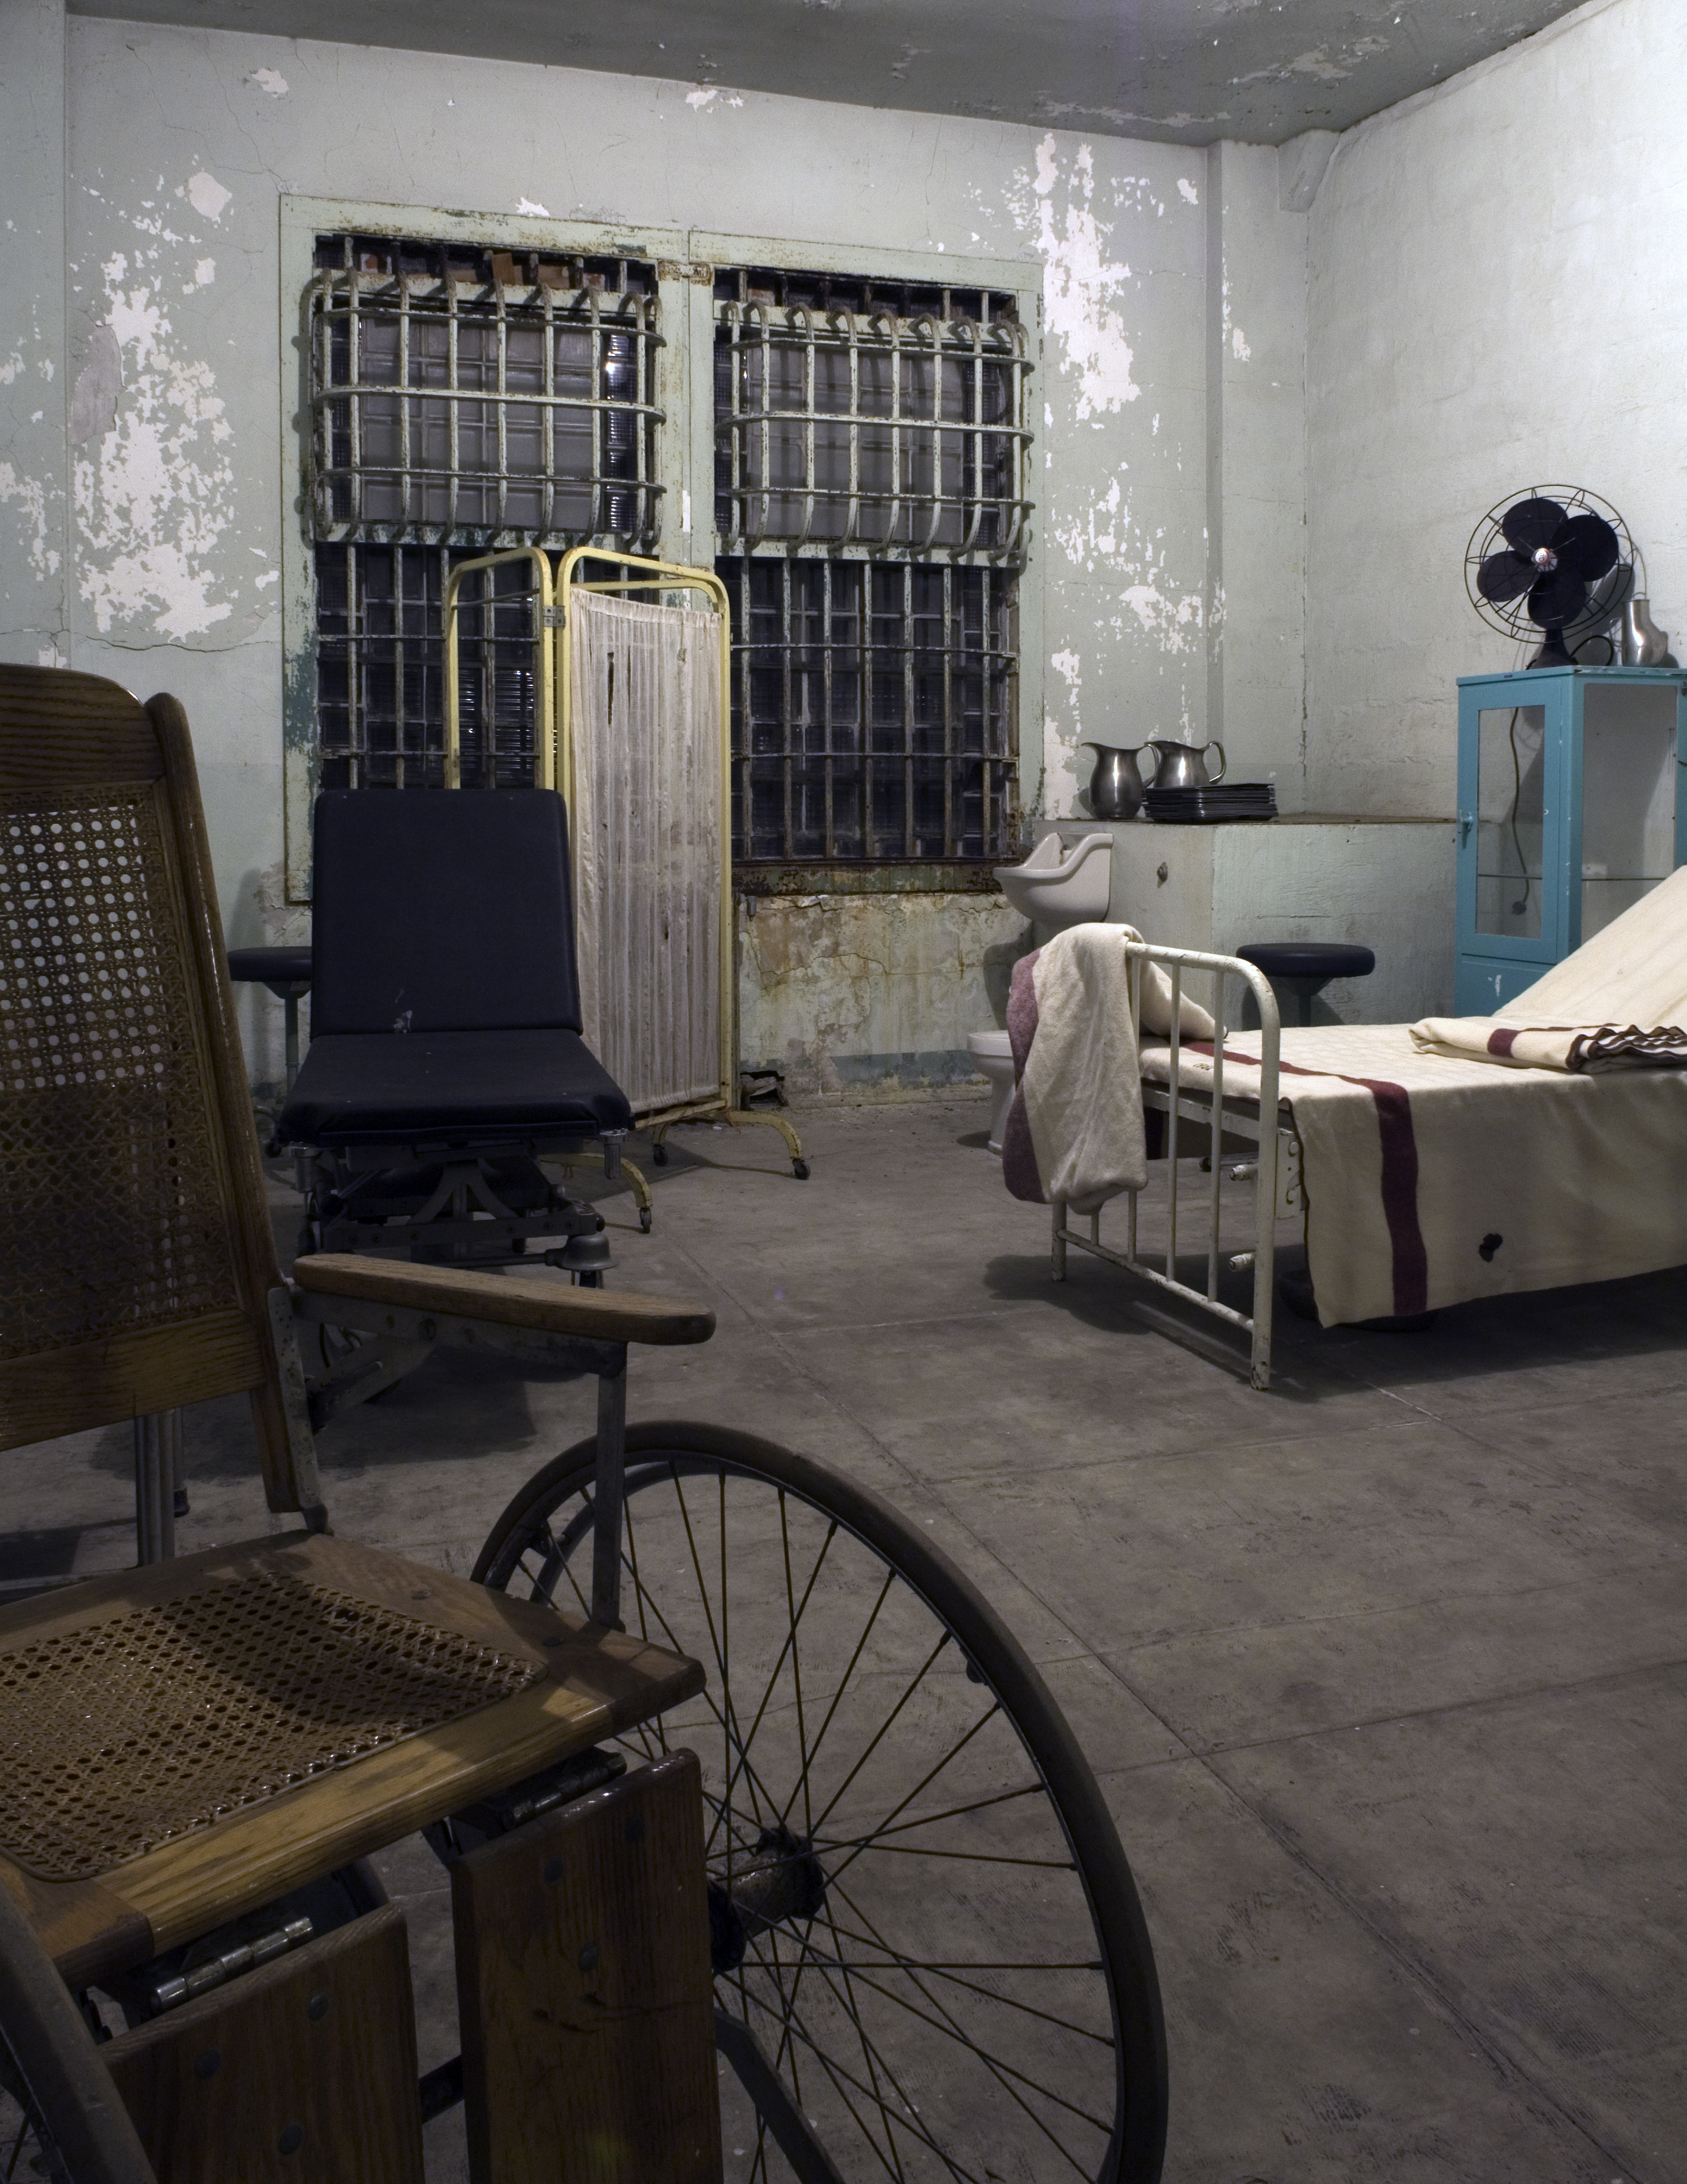 Alcatraz infirmary photo